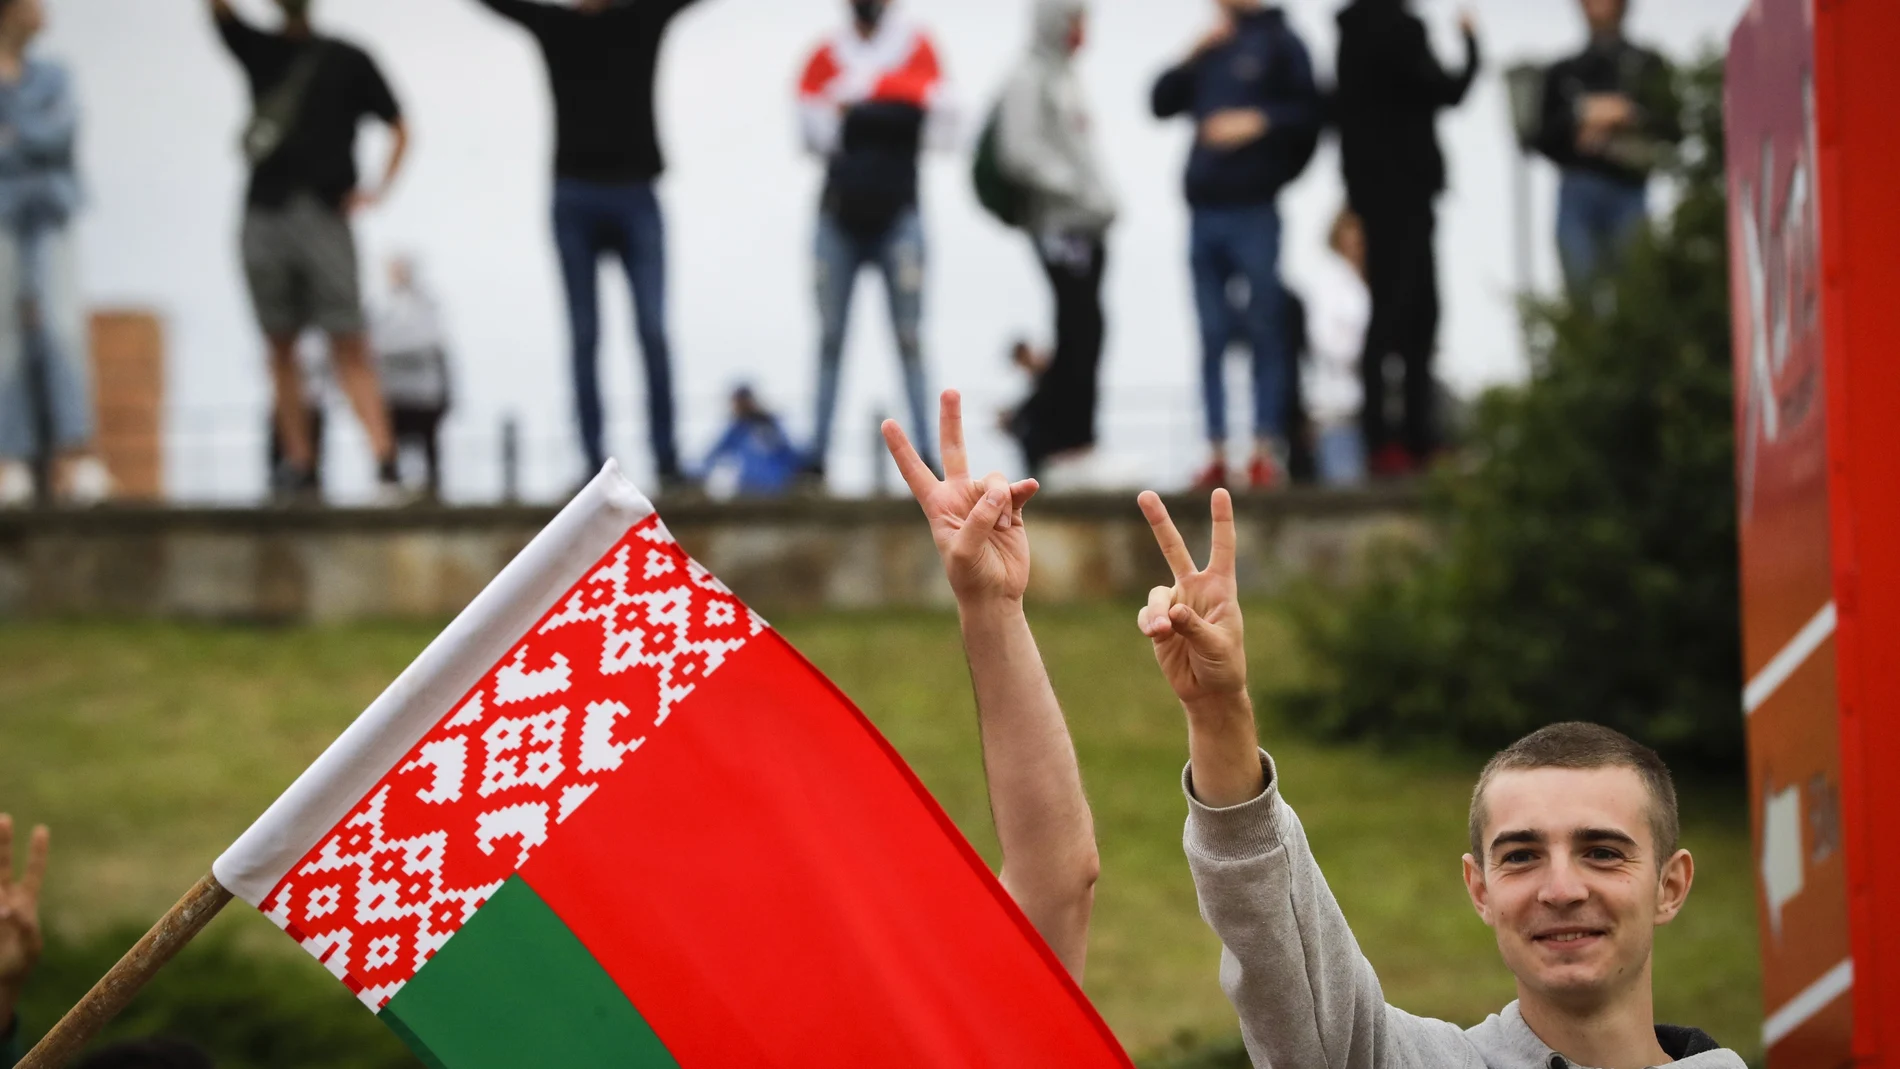 Manifestantes con la bandera de Bielorrusia protestan en Minsk contra el fraude electoral